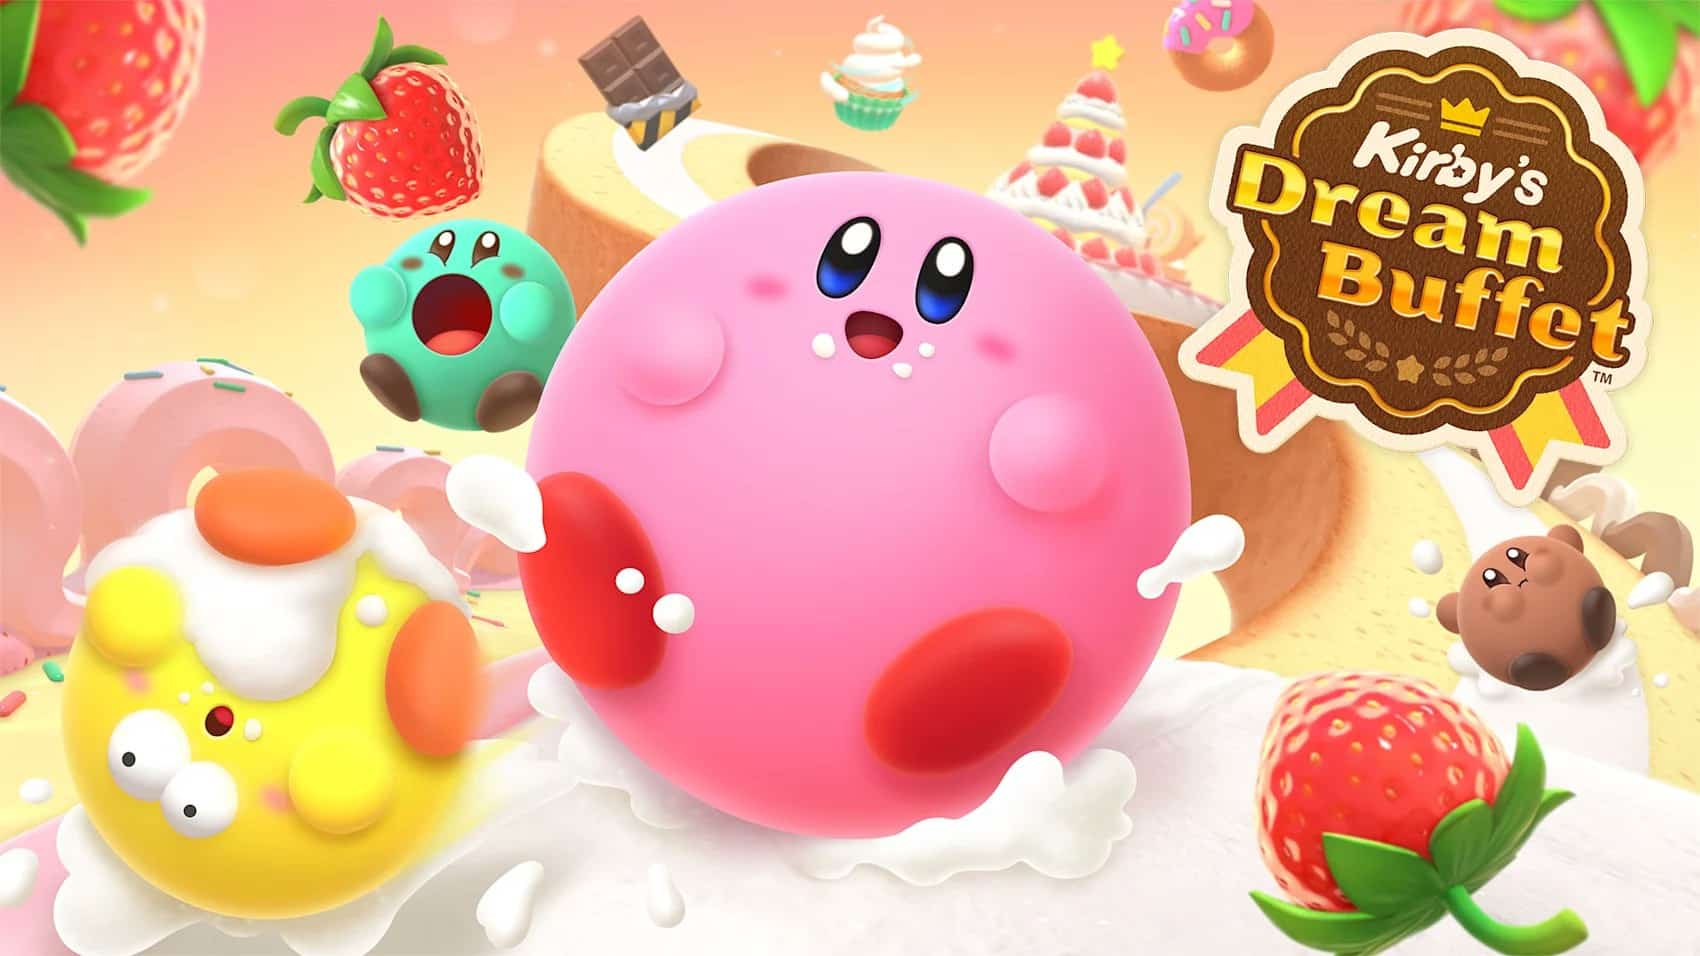 Kirby's Dream Buffet annunciato ufficialmente da Nintendo 8